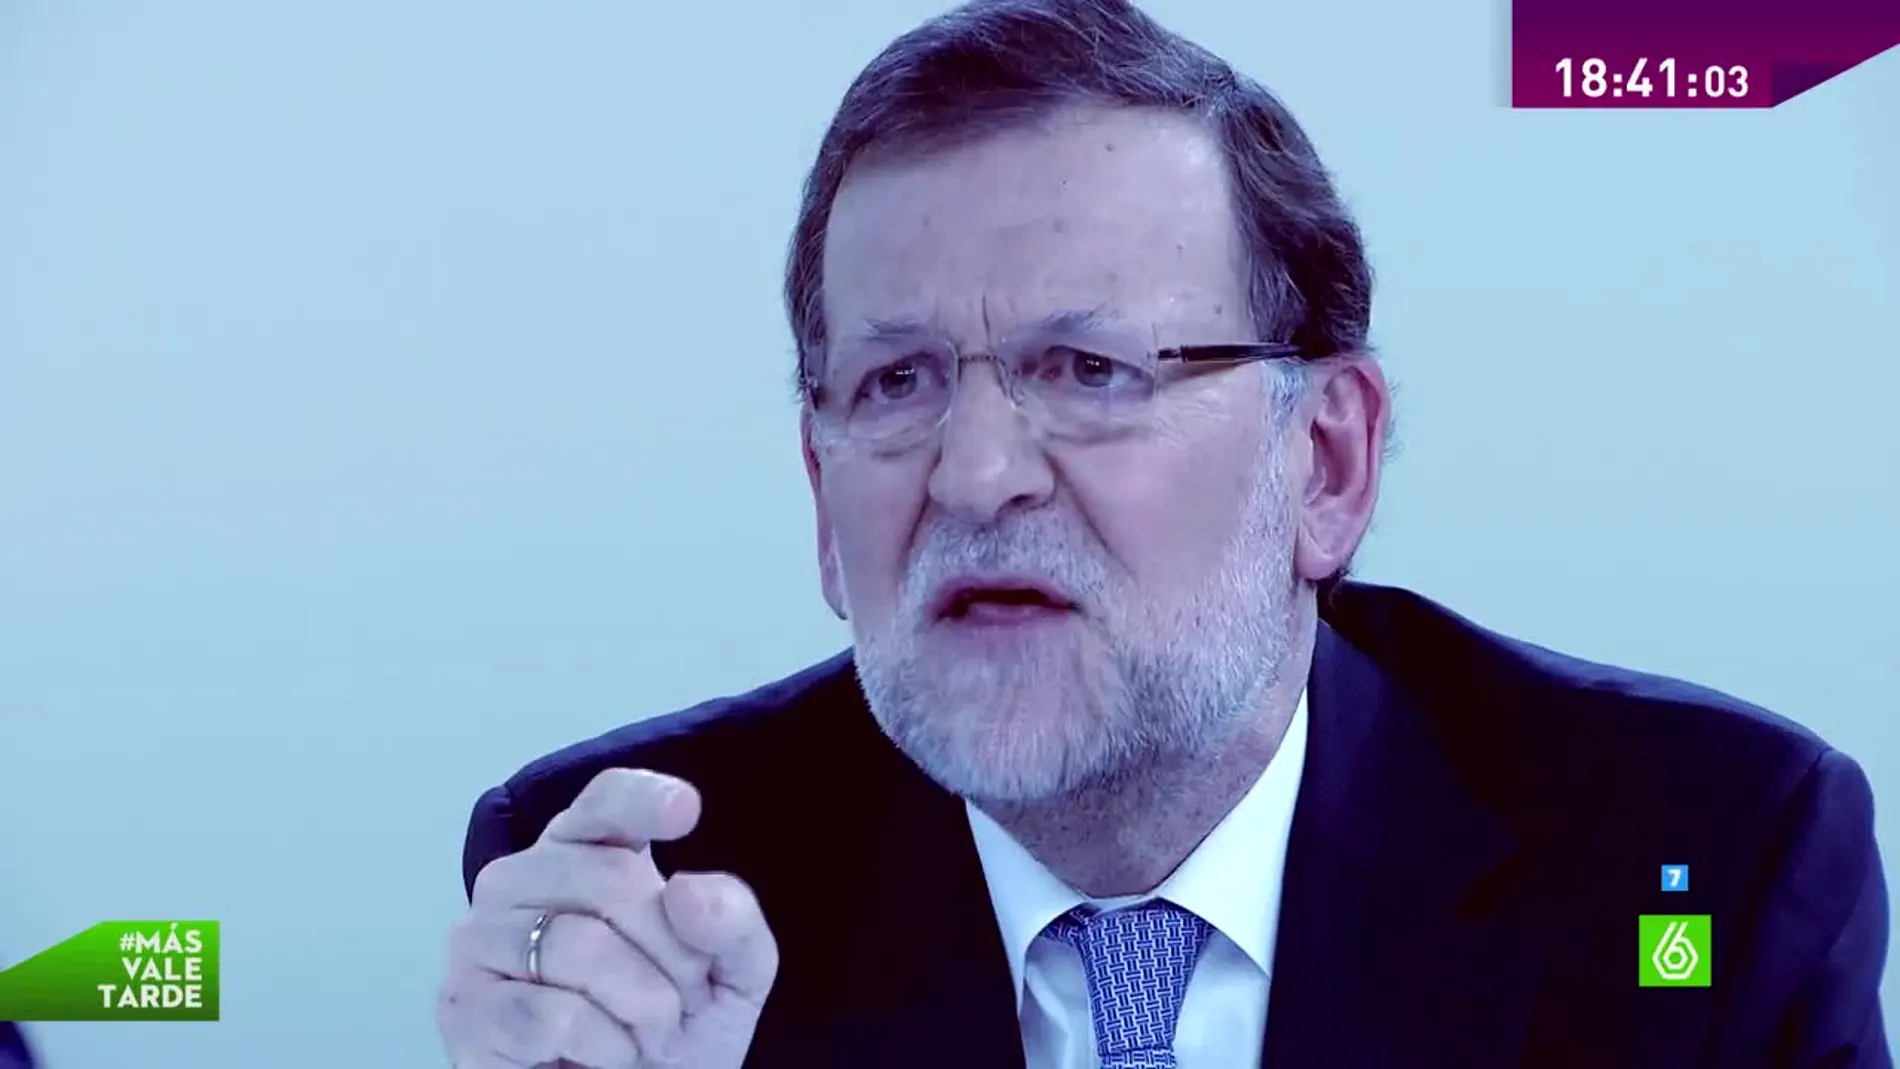 Rajoy mvt